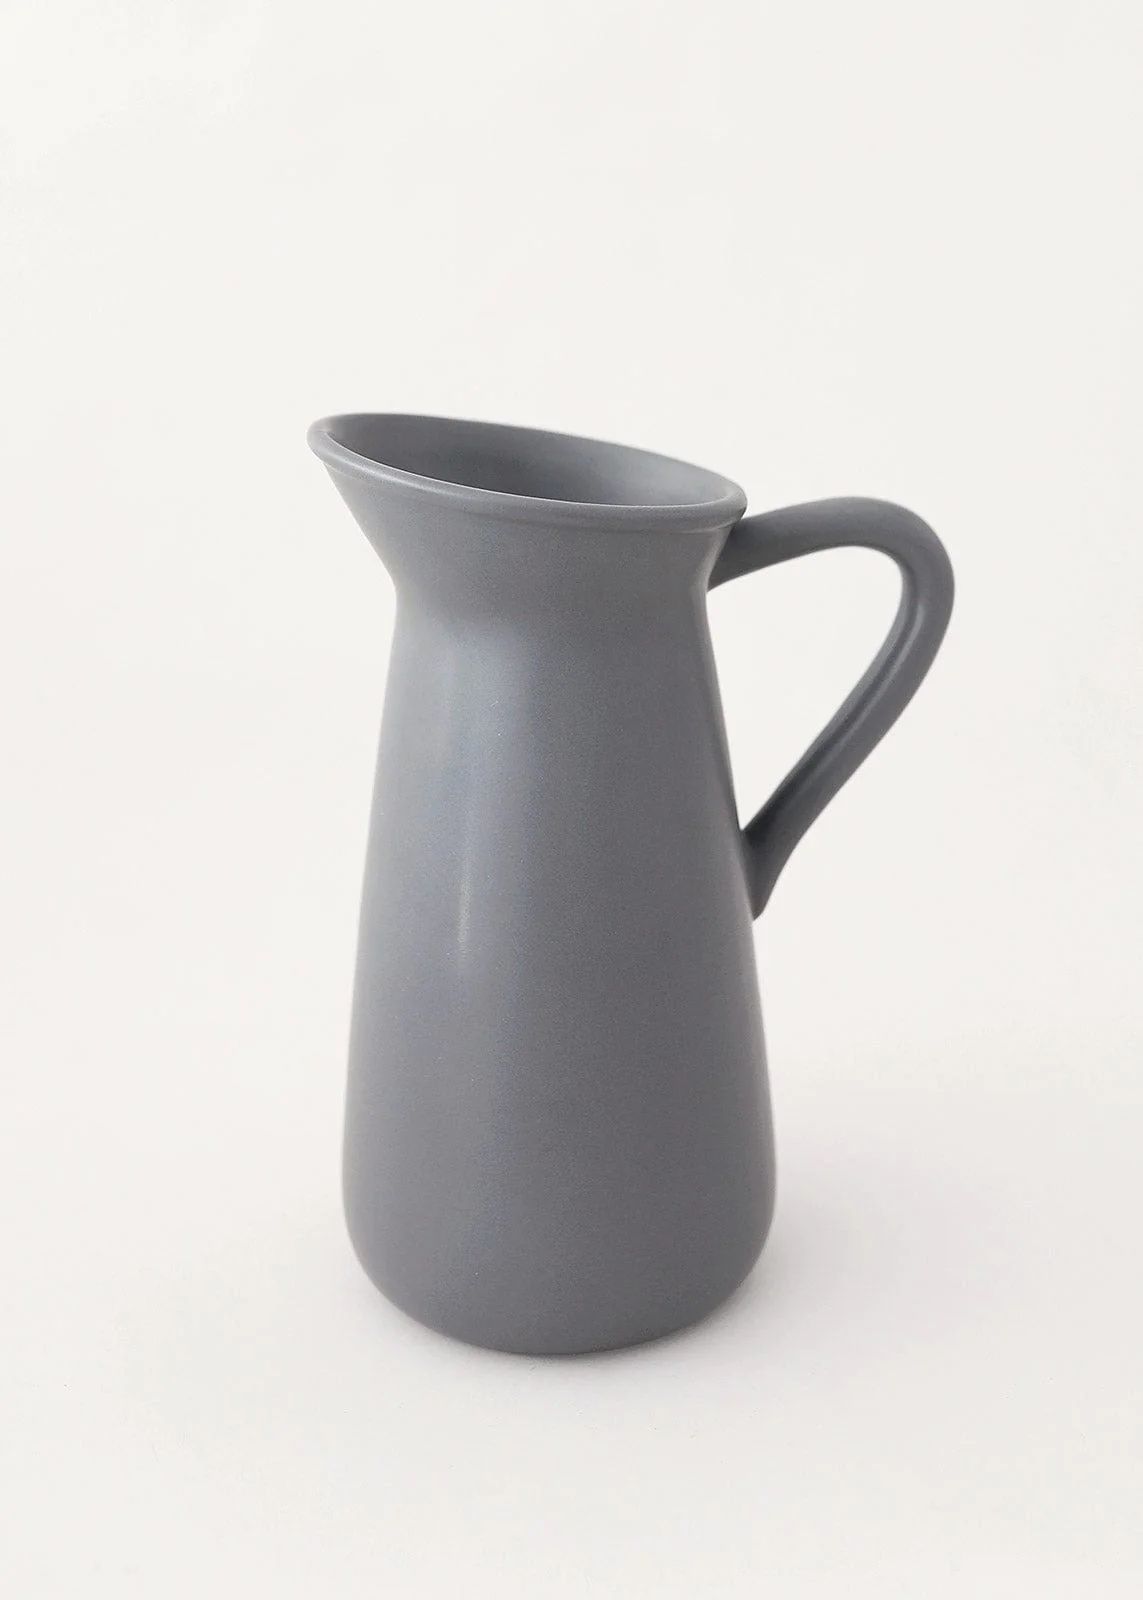 Afloral Grey Matte Glazed Ceramic Pitcher Vase with Handle - 9.5" Tall | Afloral (US)